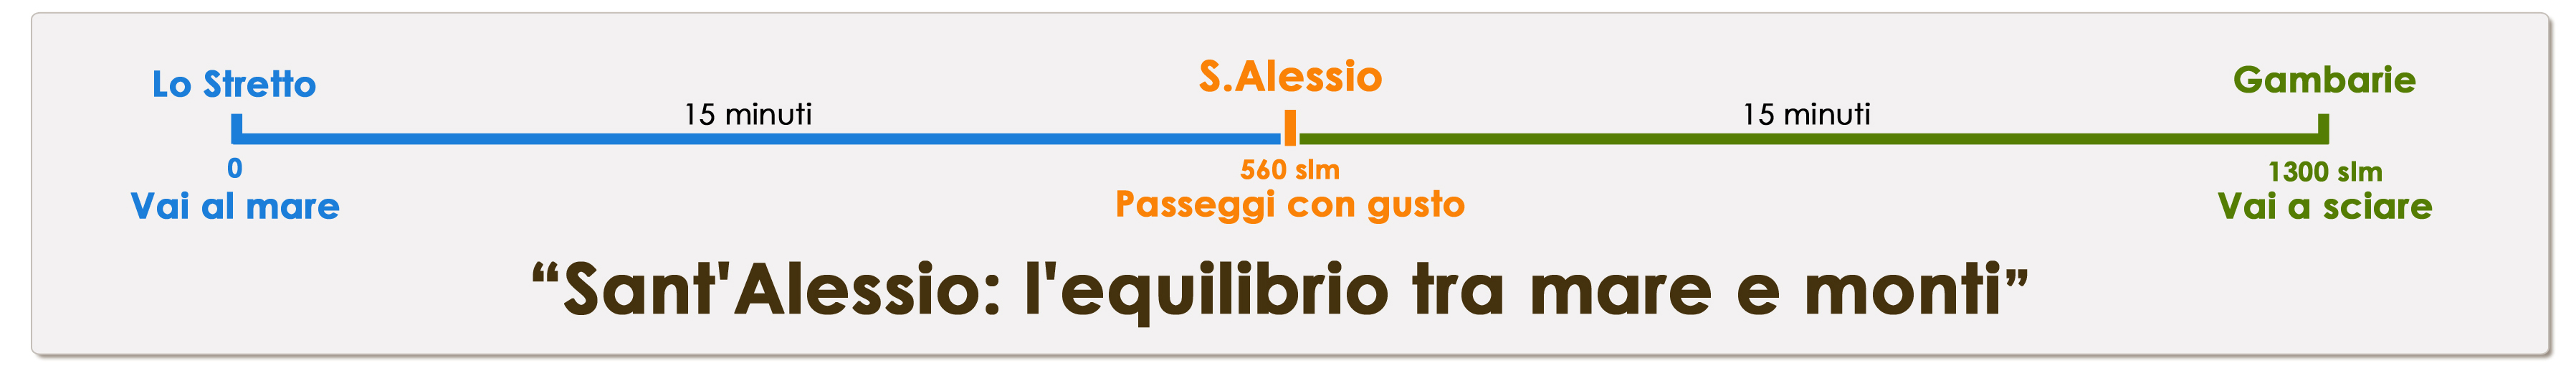 Slogan Pro Loco Sant'Alessio in Aspromonte. Sant’Alessio: l'equilibrio tra mare e monti.